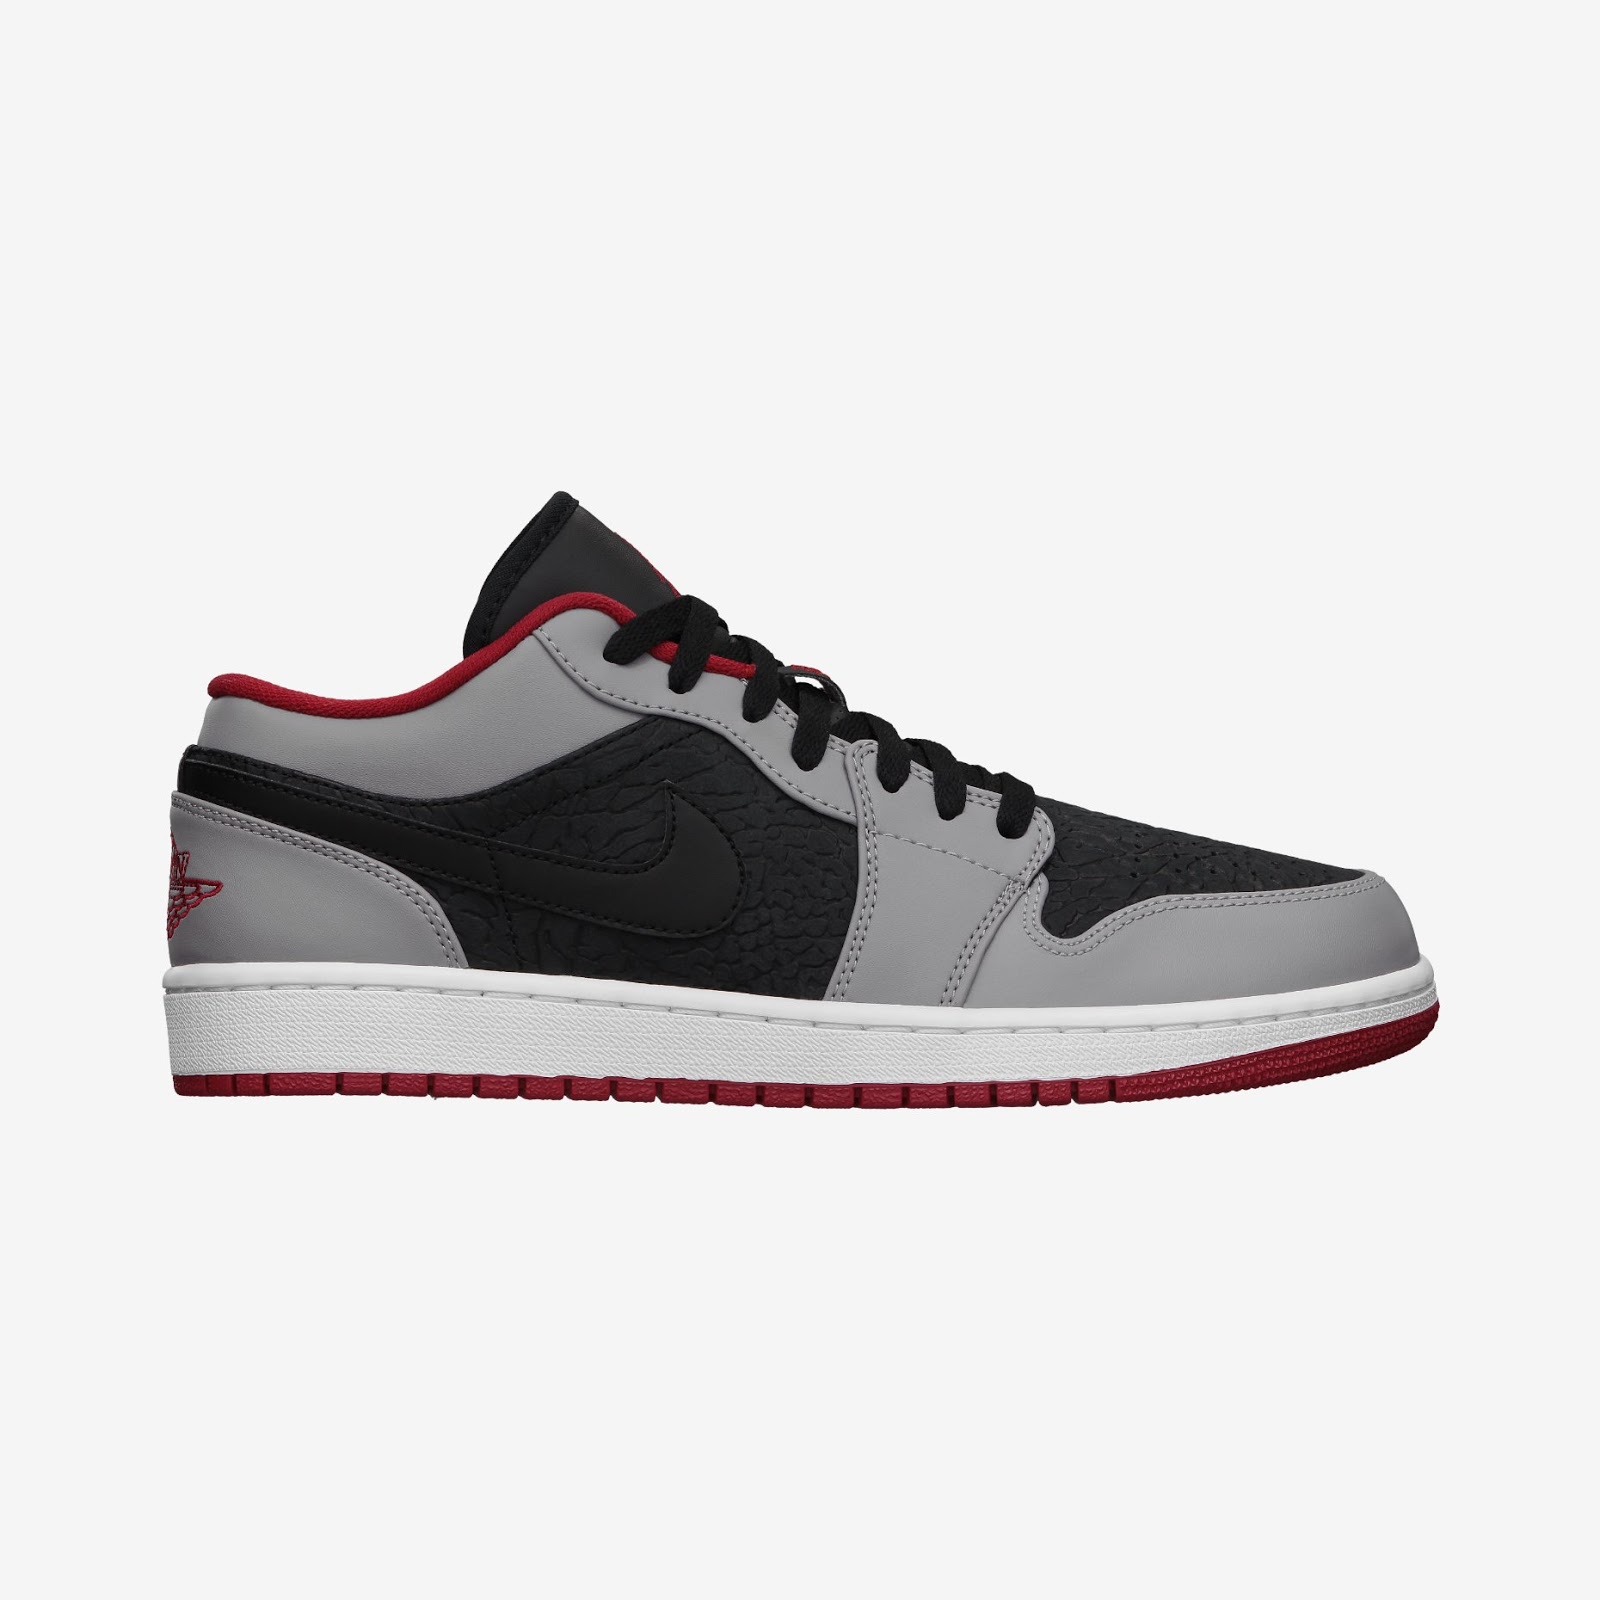 Nike Air Jordan Retro Basketball Shoes and Sandals!: AIR JORDAN 1 LOW ...